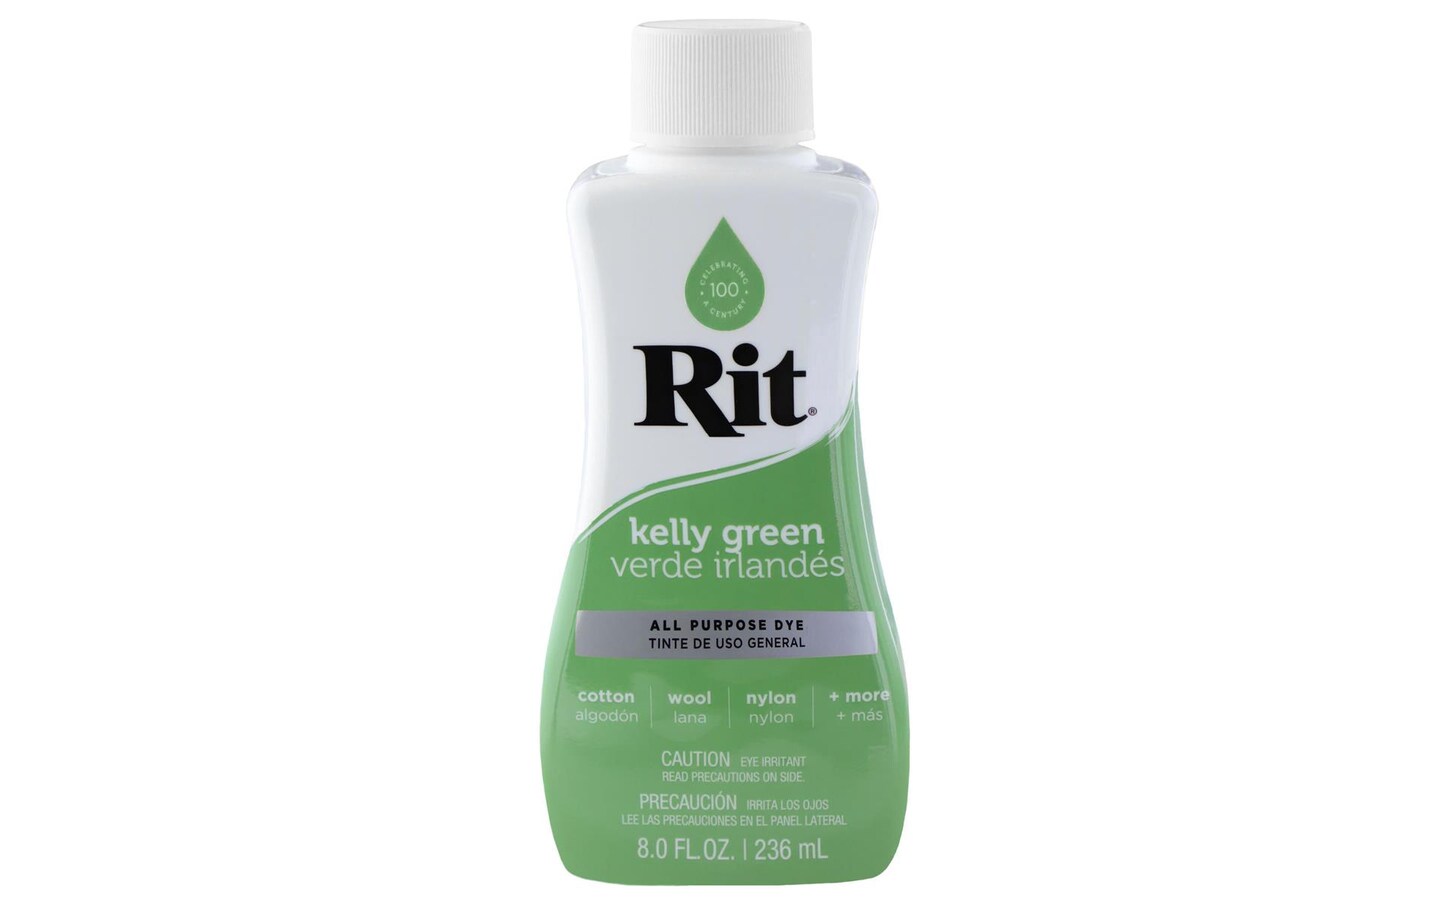 Rit All Purpose Dye, Kelly Green - 8.0 fl oz